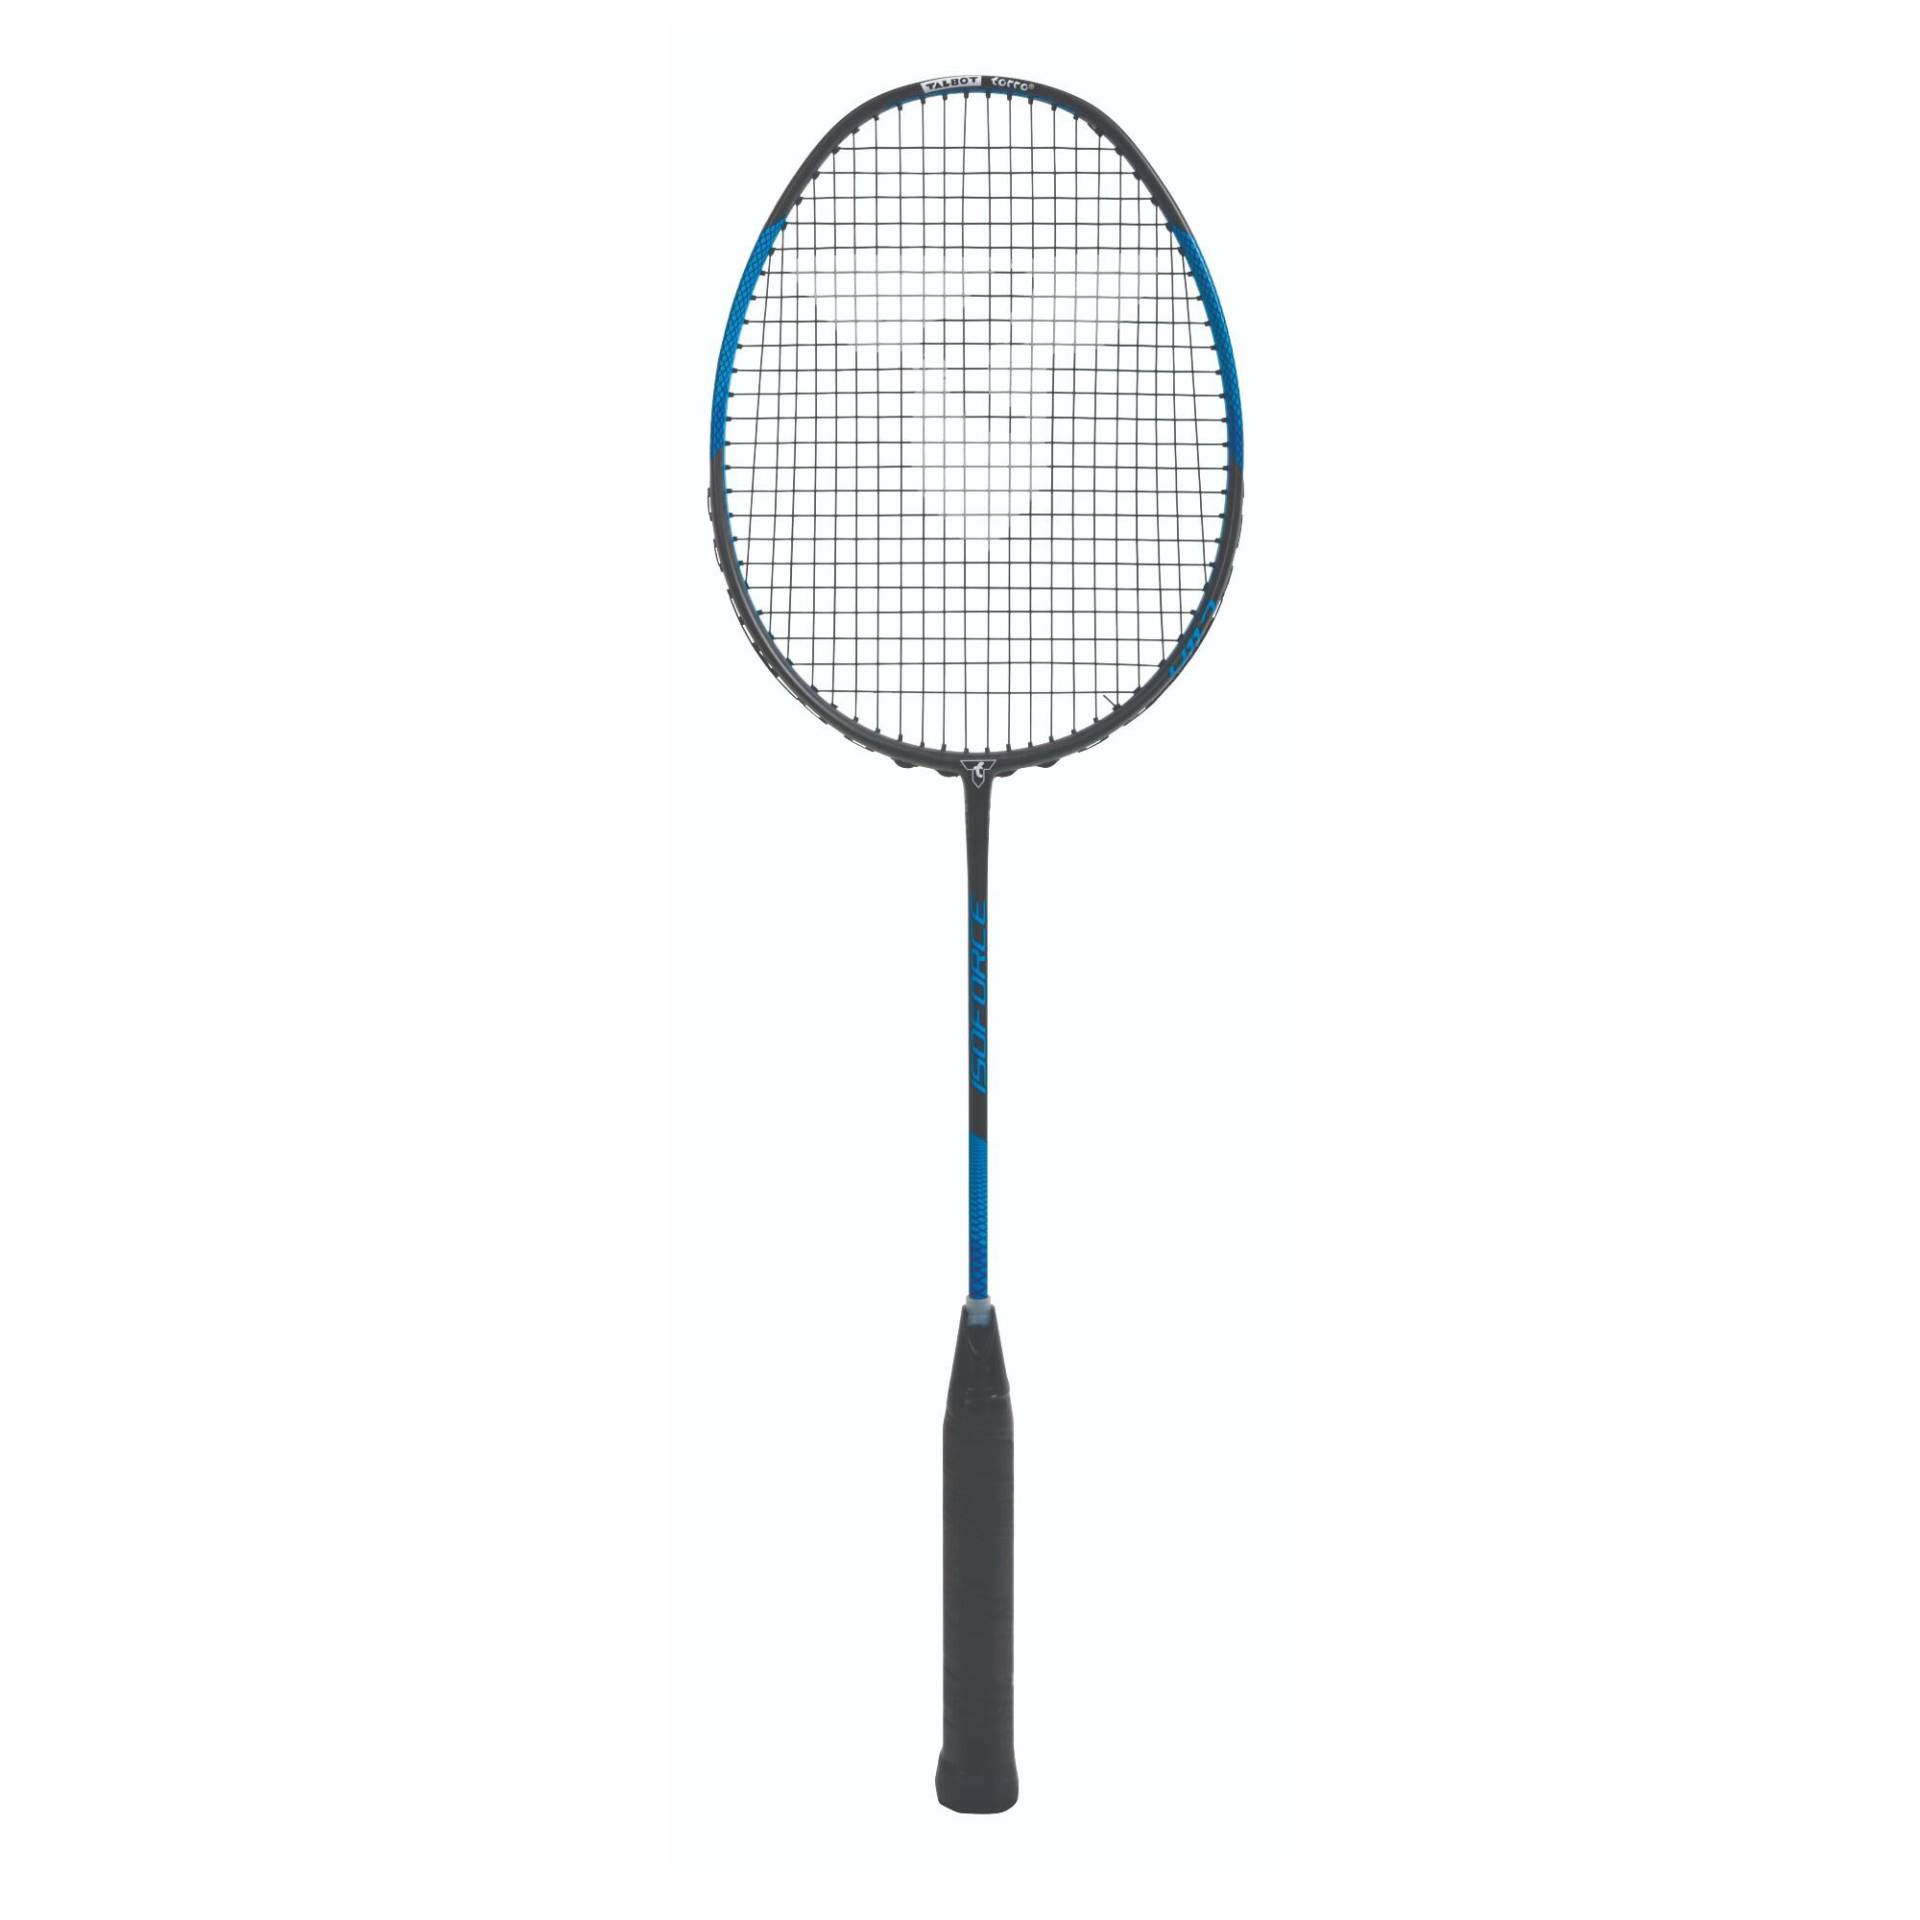 Badmintonschläger Isoforce 411.7 - schwarz/blau von Talbot torro